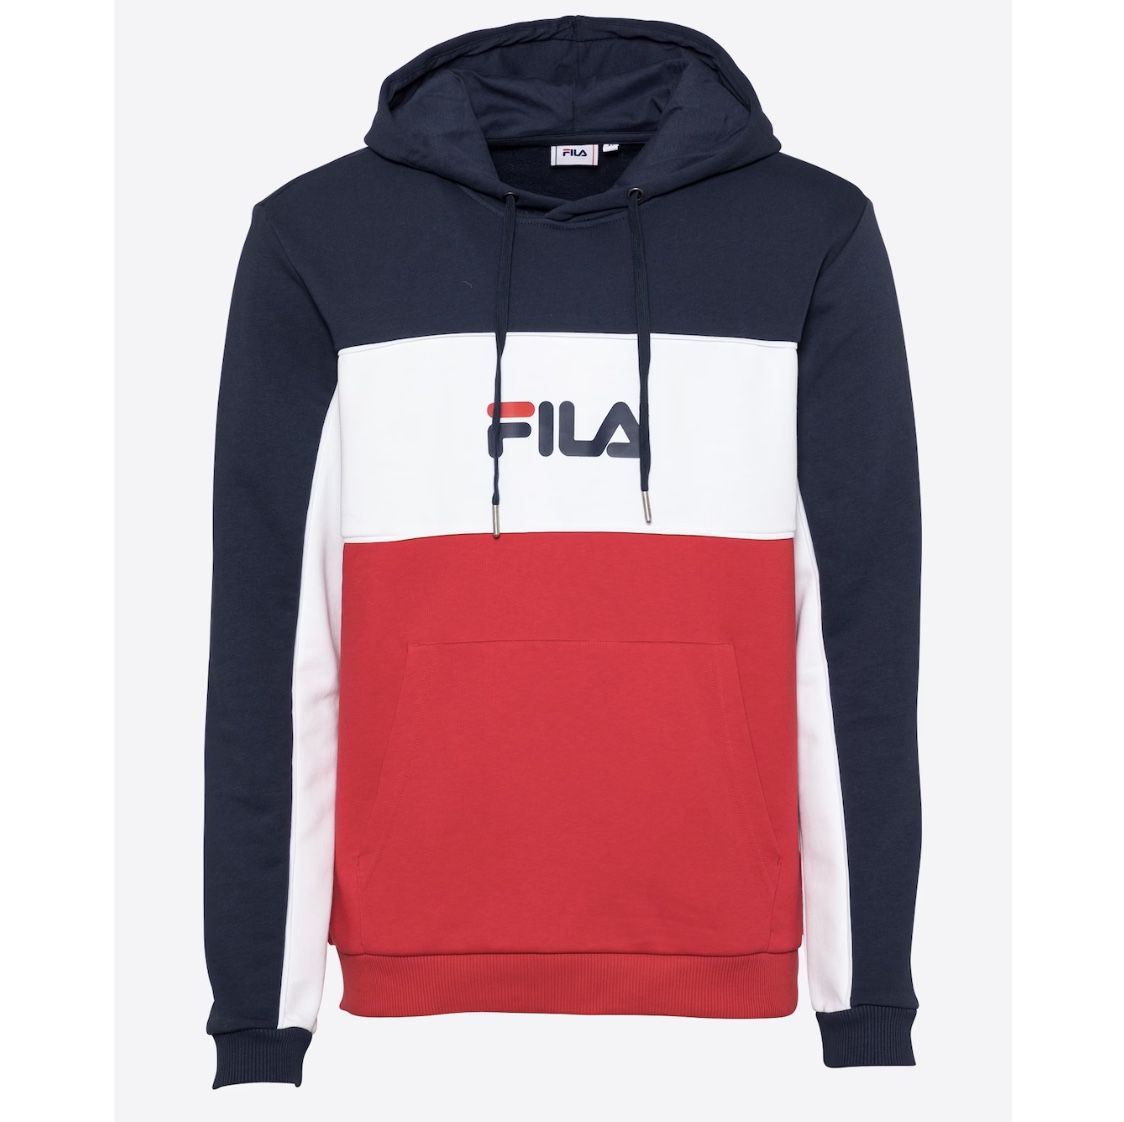 FILA Analu Sweatshirt für 8,36€ (statt 56€)